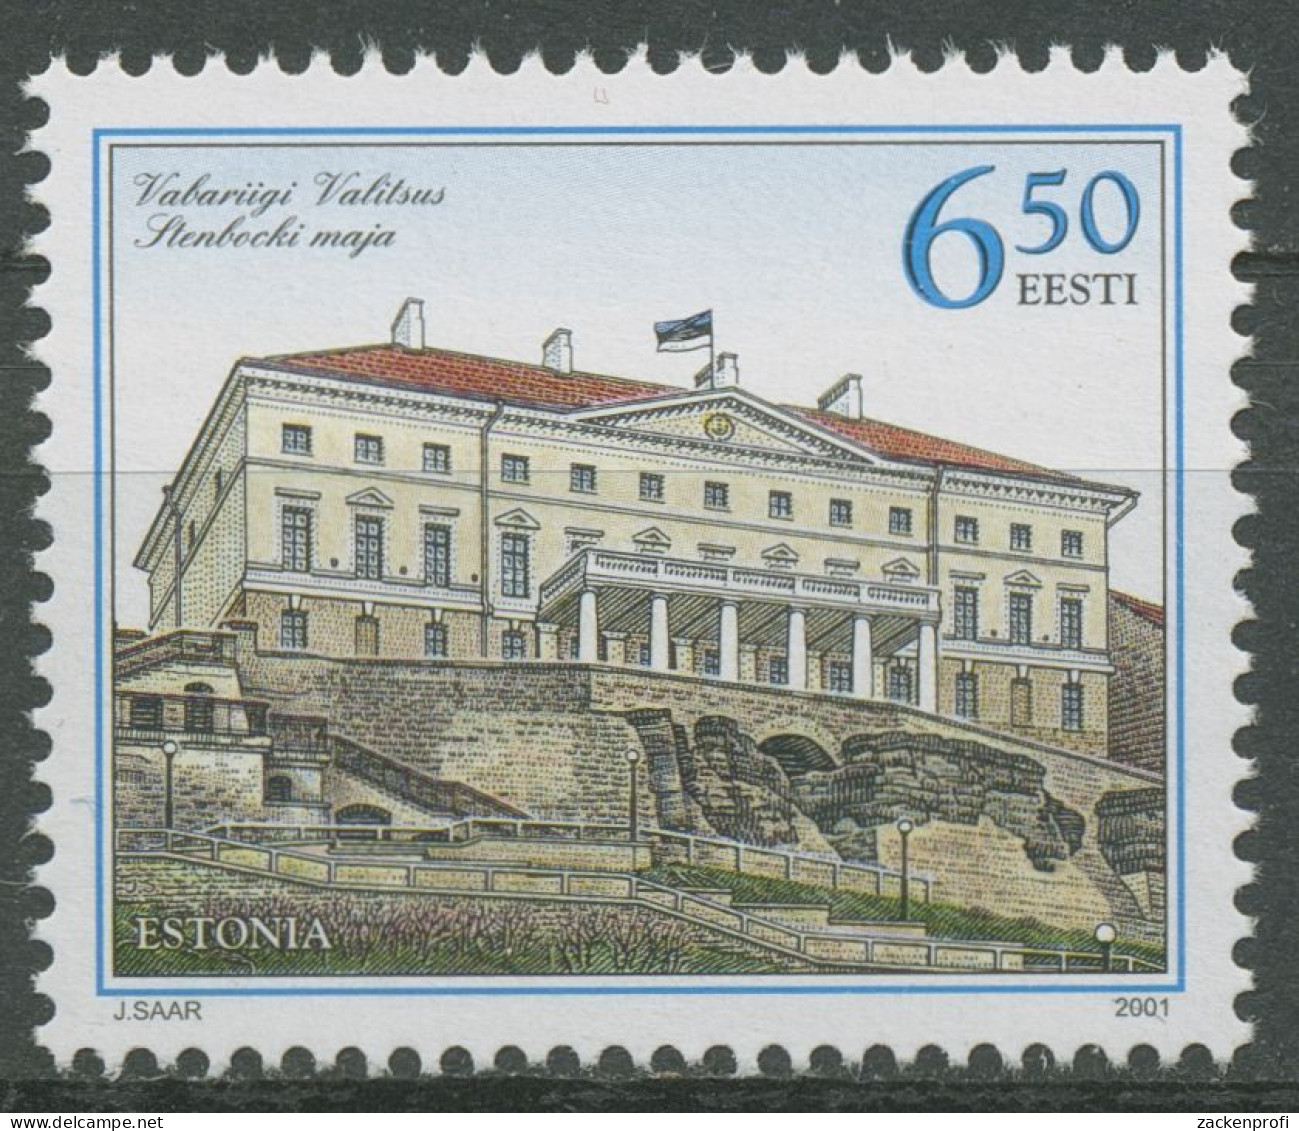 Estland 2001 Regierungssitz Stenbock-Palast Tallin 393 Postfrisch - Estonia